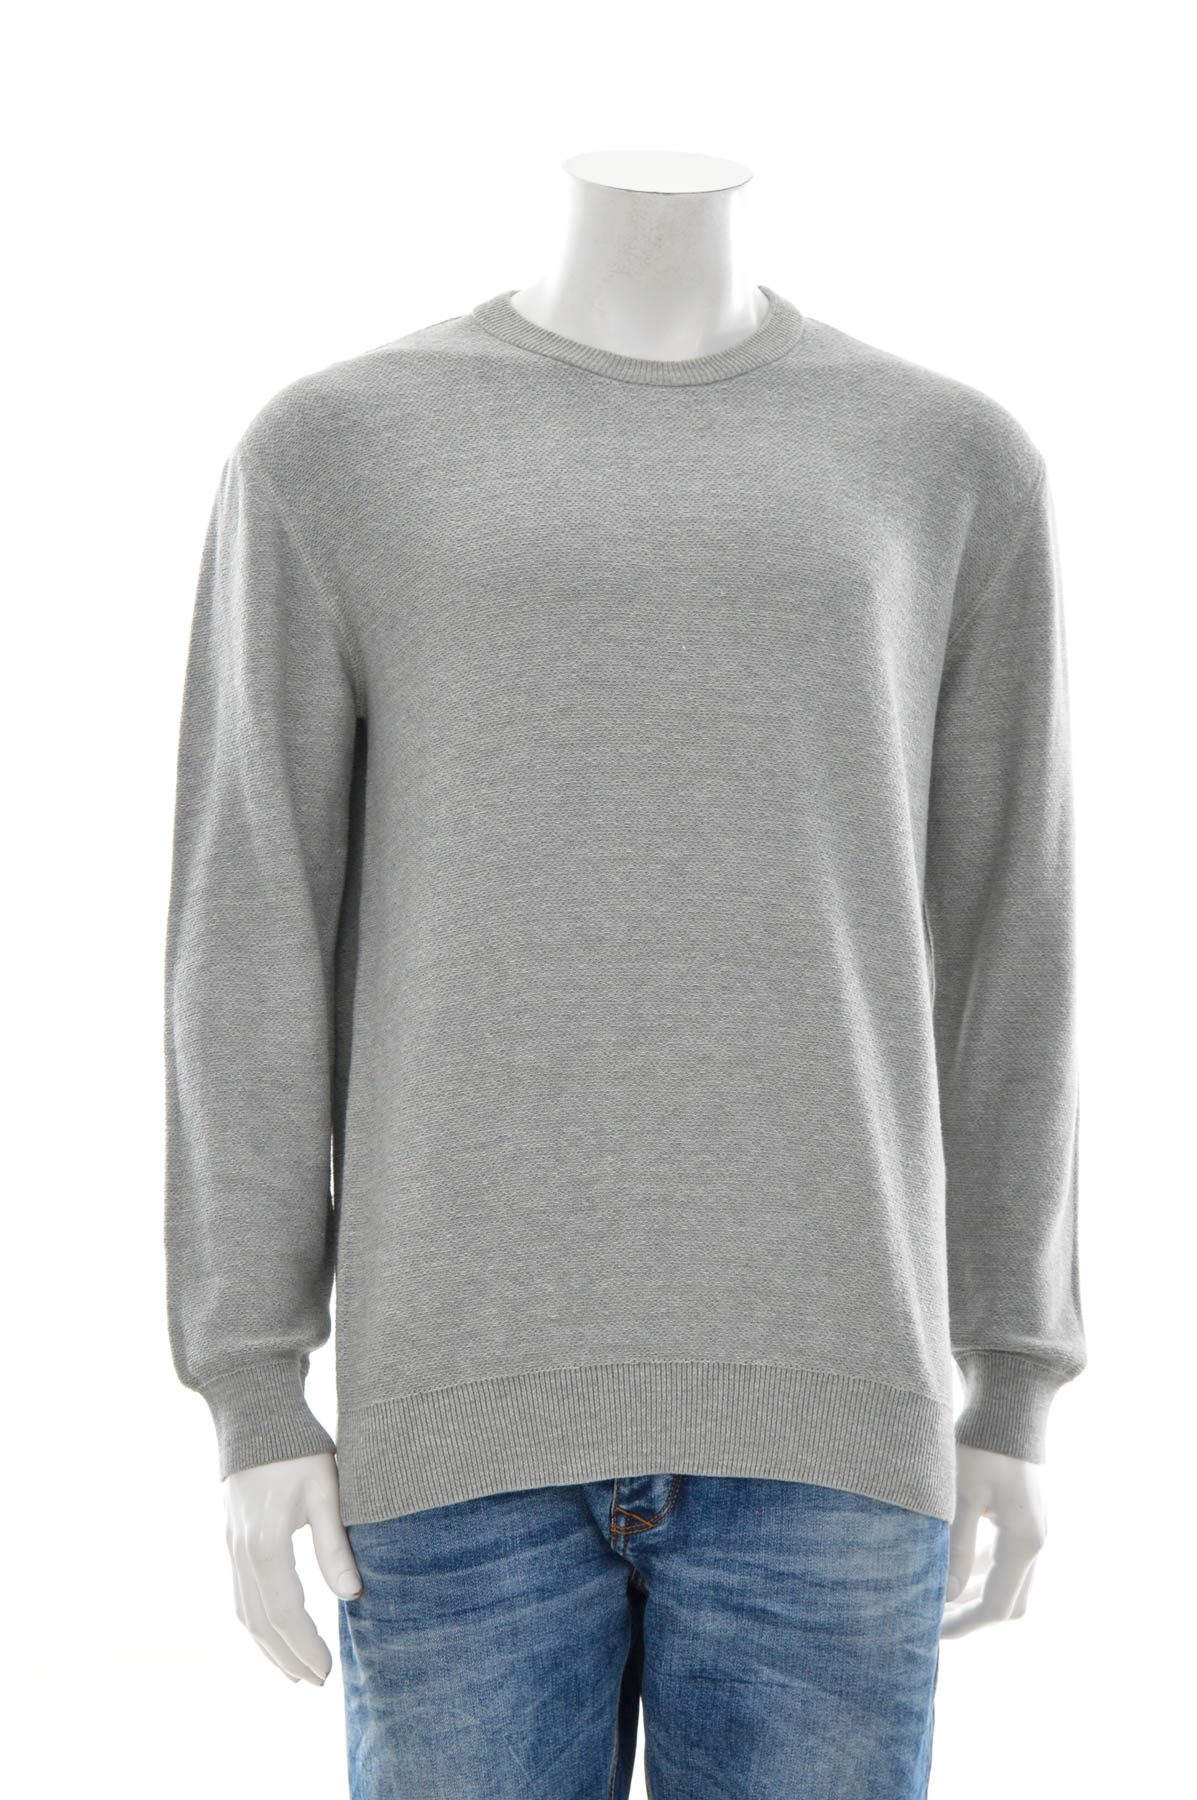 Men's sweater - Minimum - 0